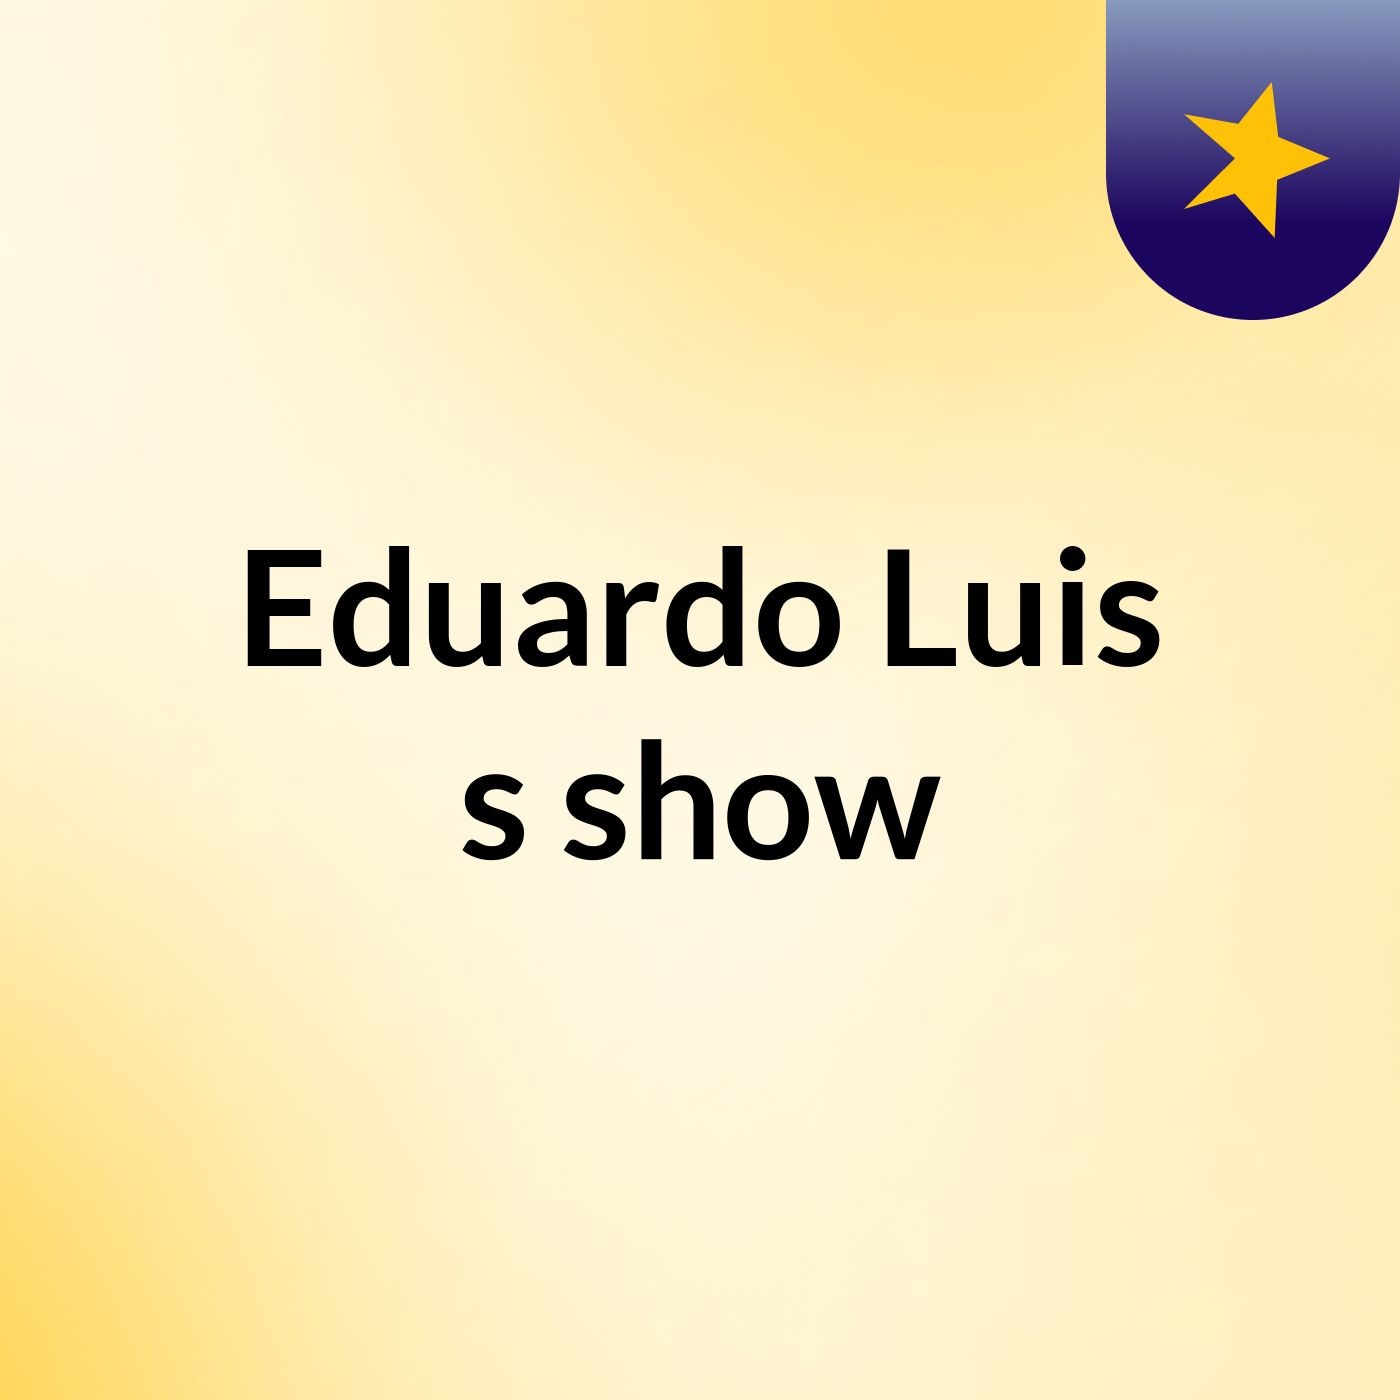 Eduardo Luis's show